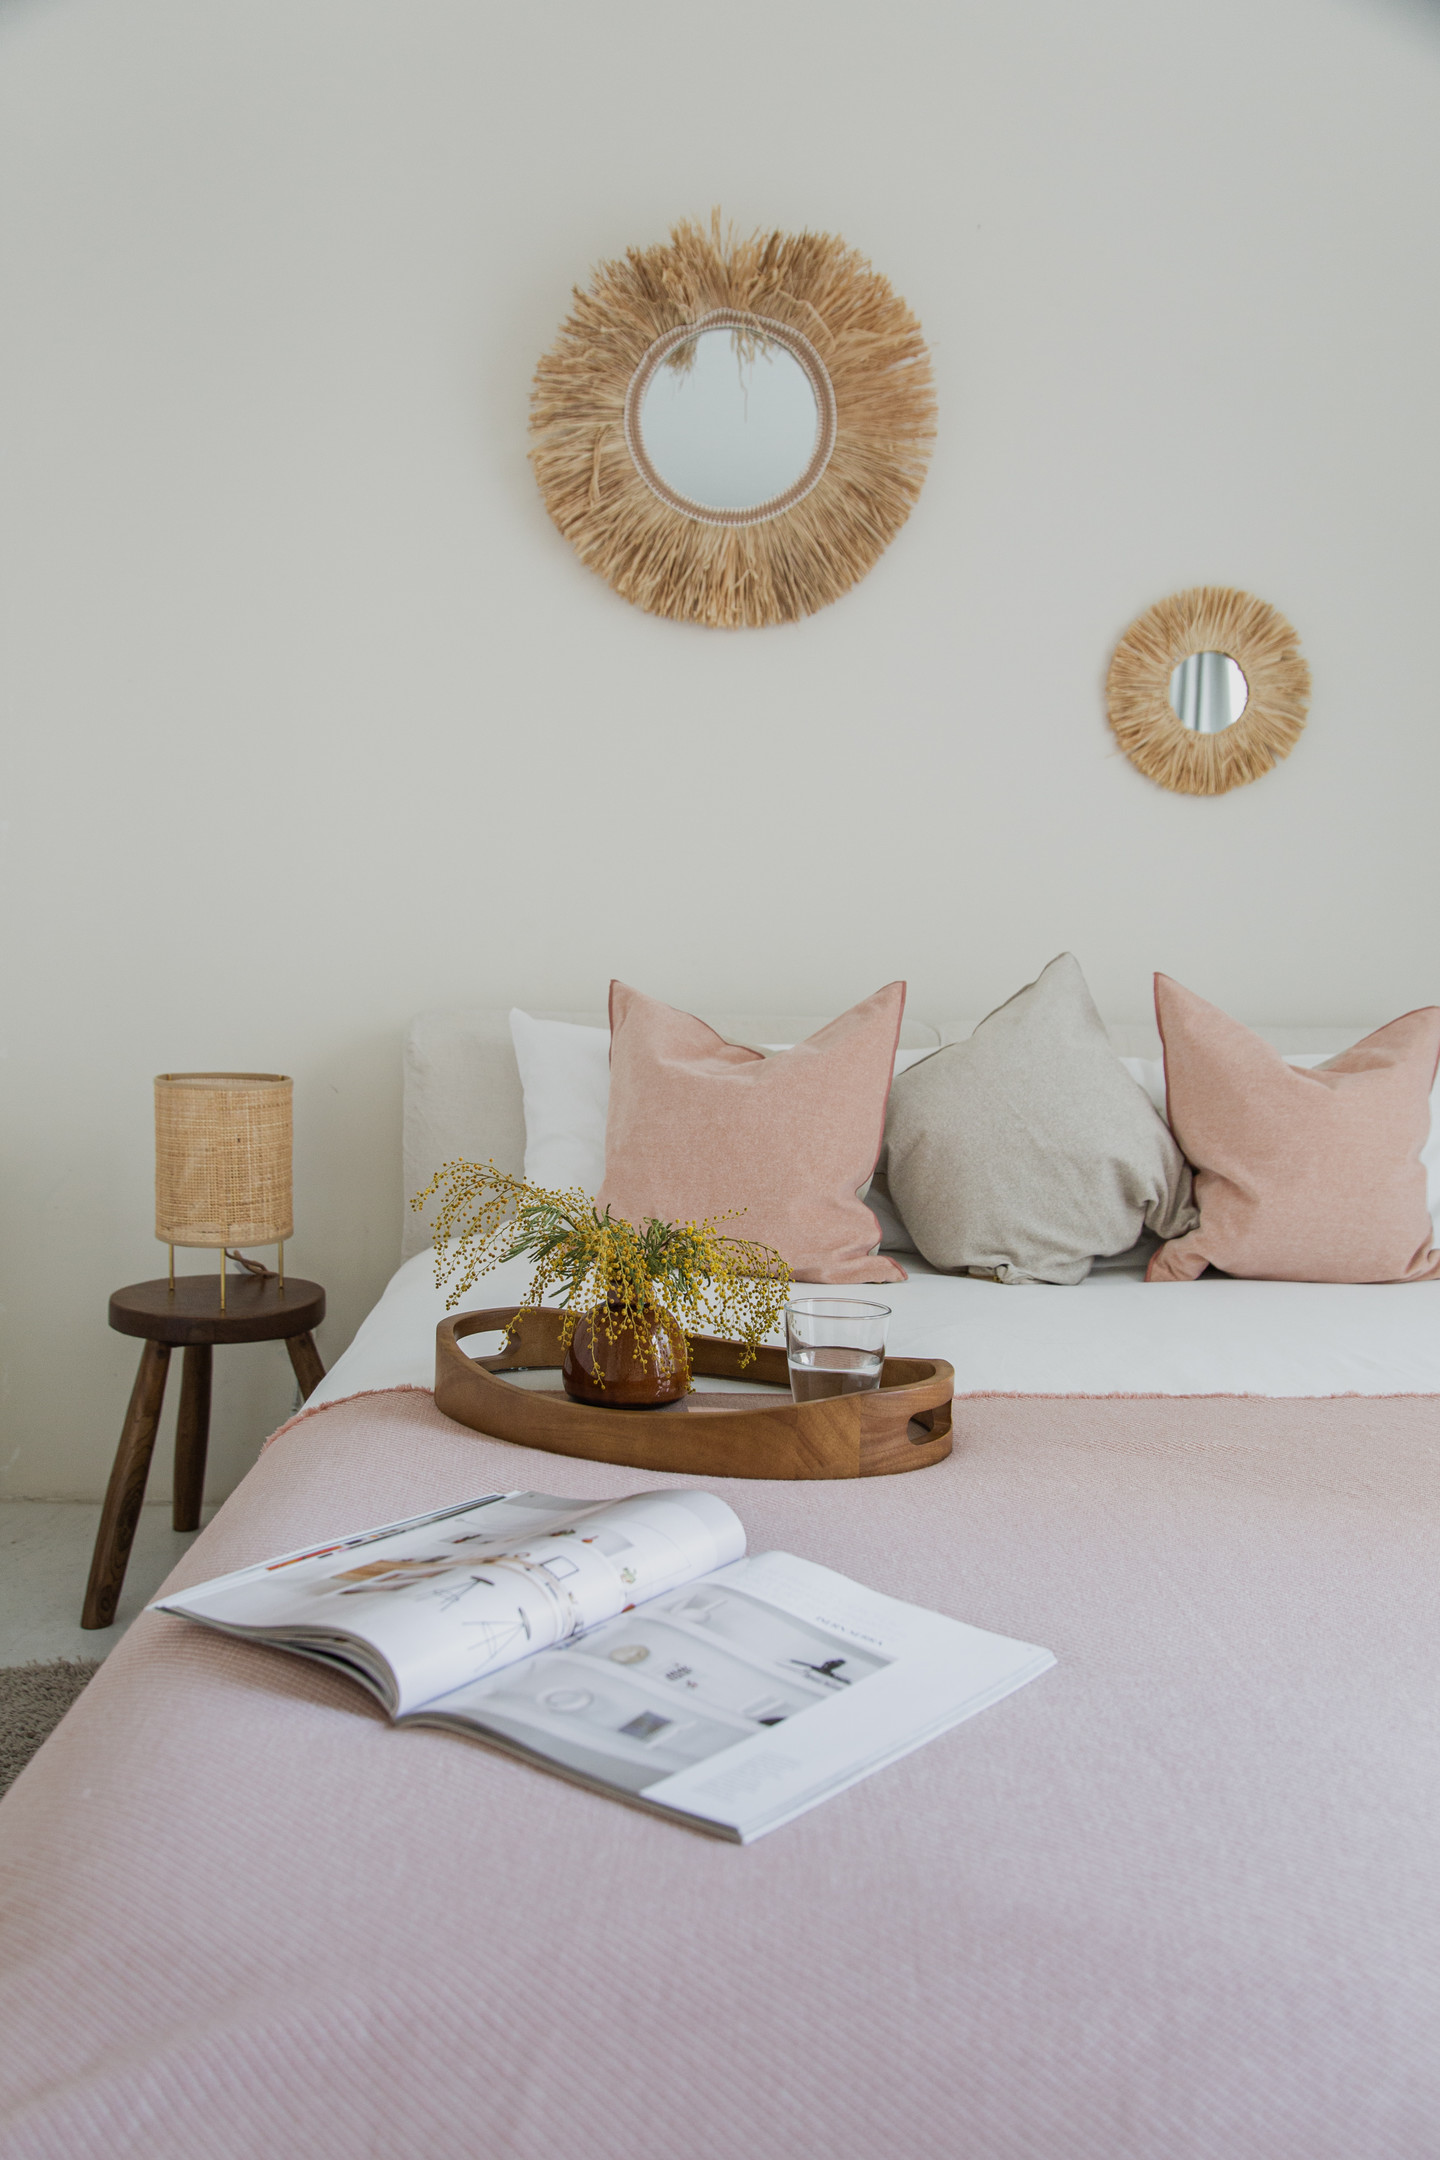 Để tạo cảm giác phòng ngủ rộng rãi hơn, bạn có thể sử dụng màu trắng hoặc be làm màu nền rồi nhấn nhá các gam màu pastel.